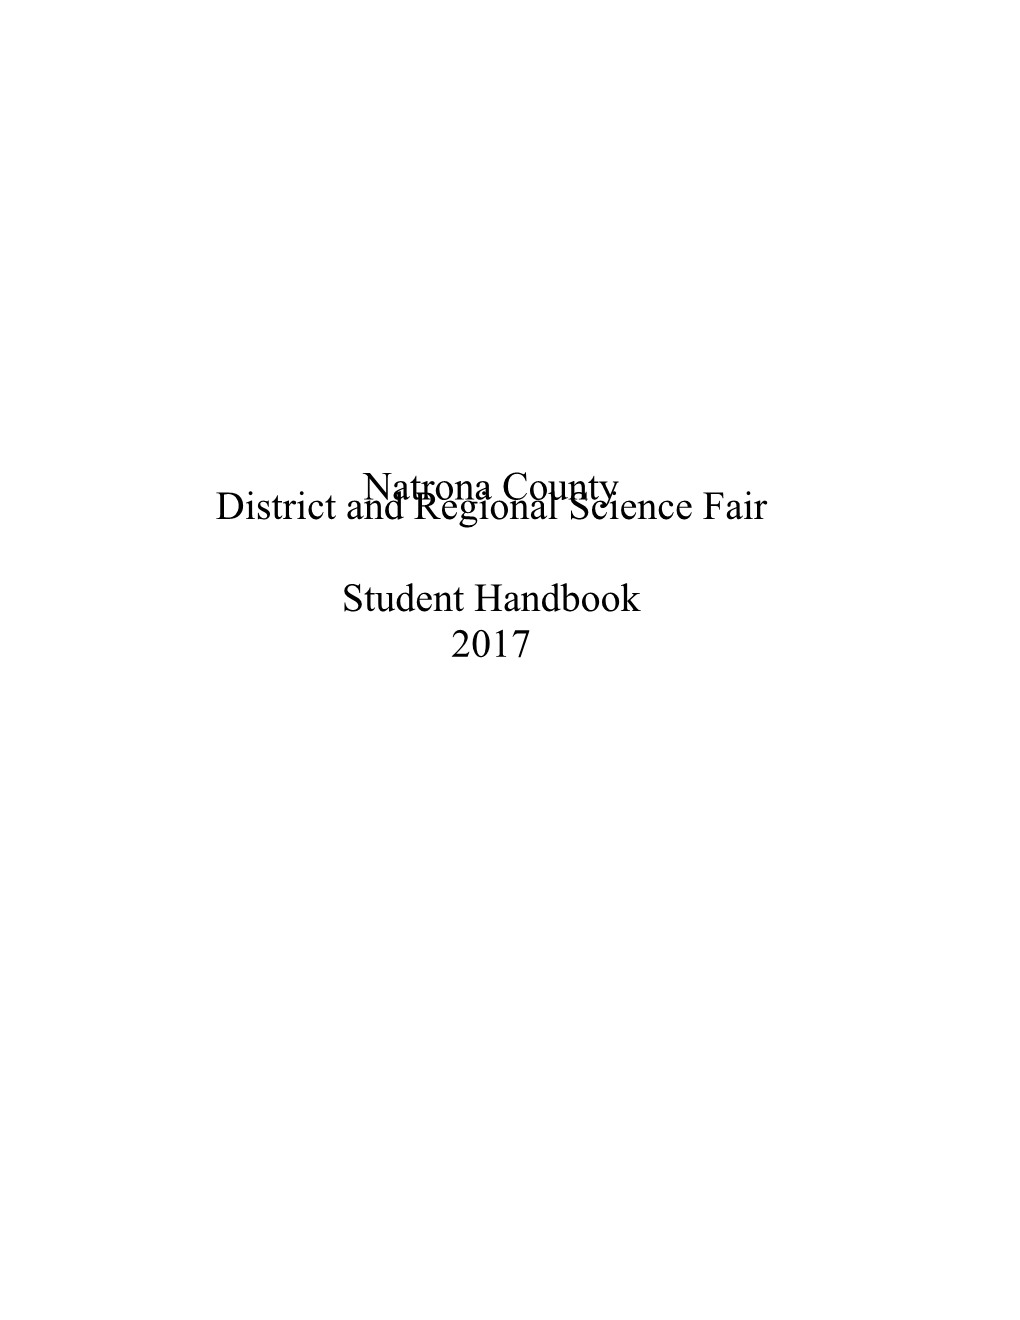 Science Fair Student Handbook